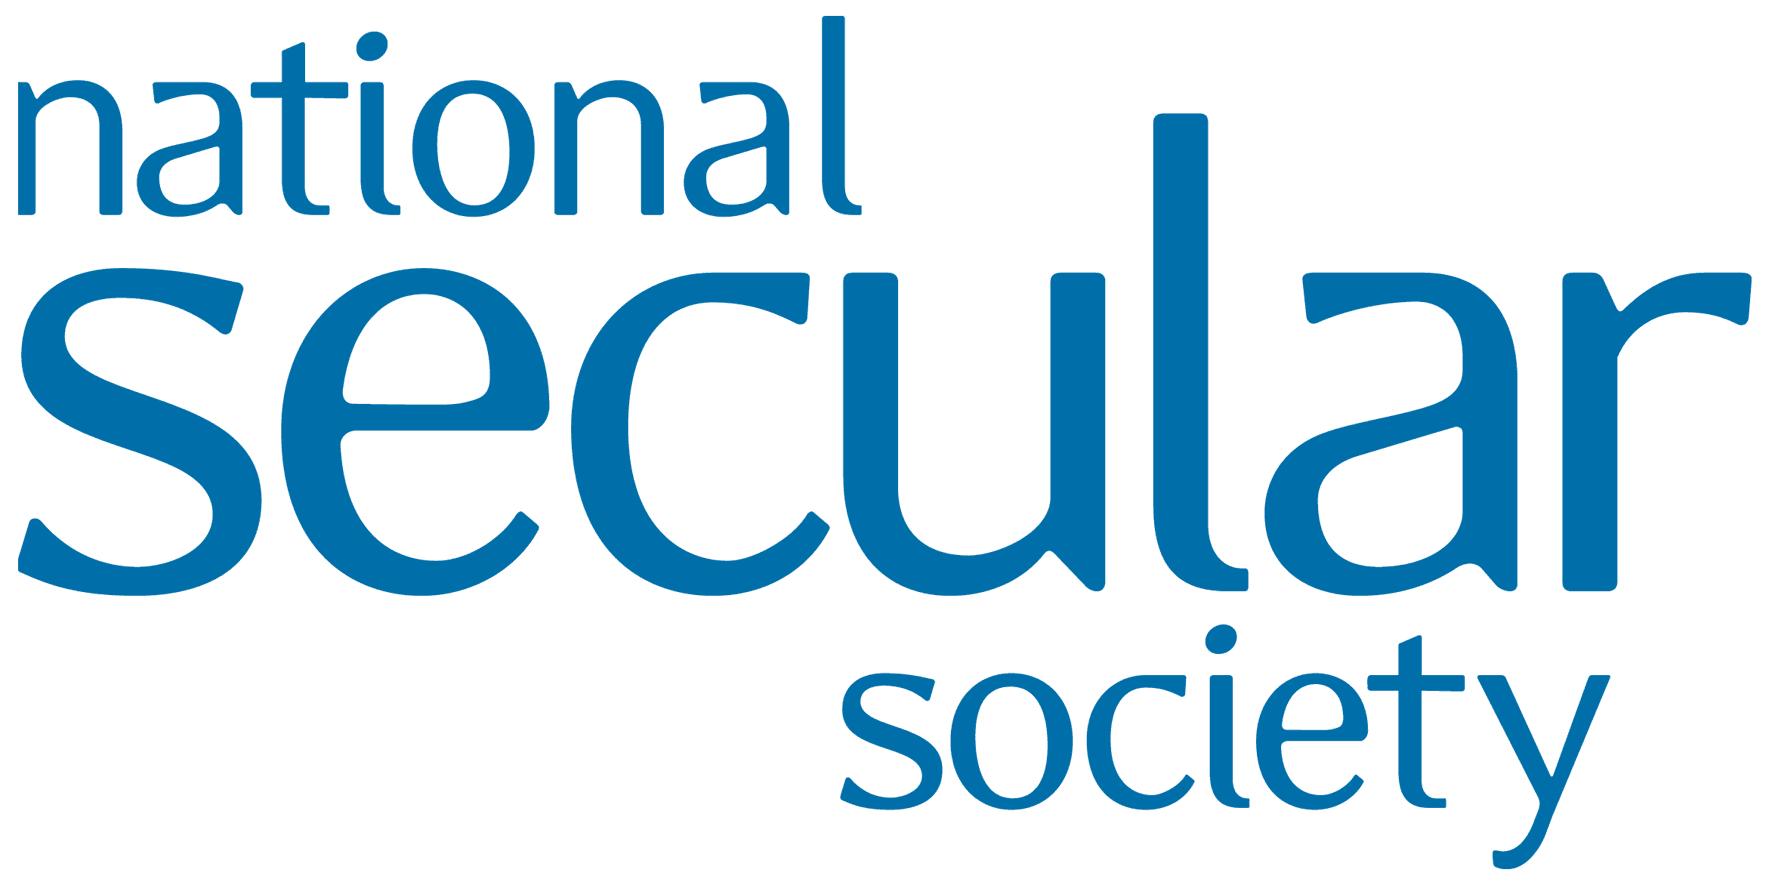 National Secular Society